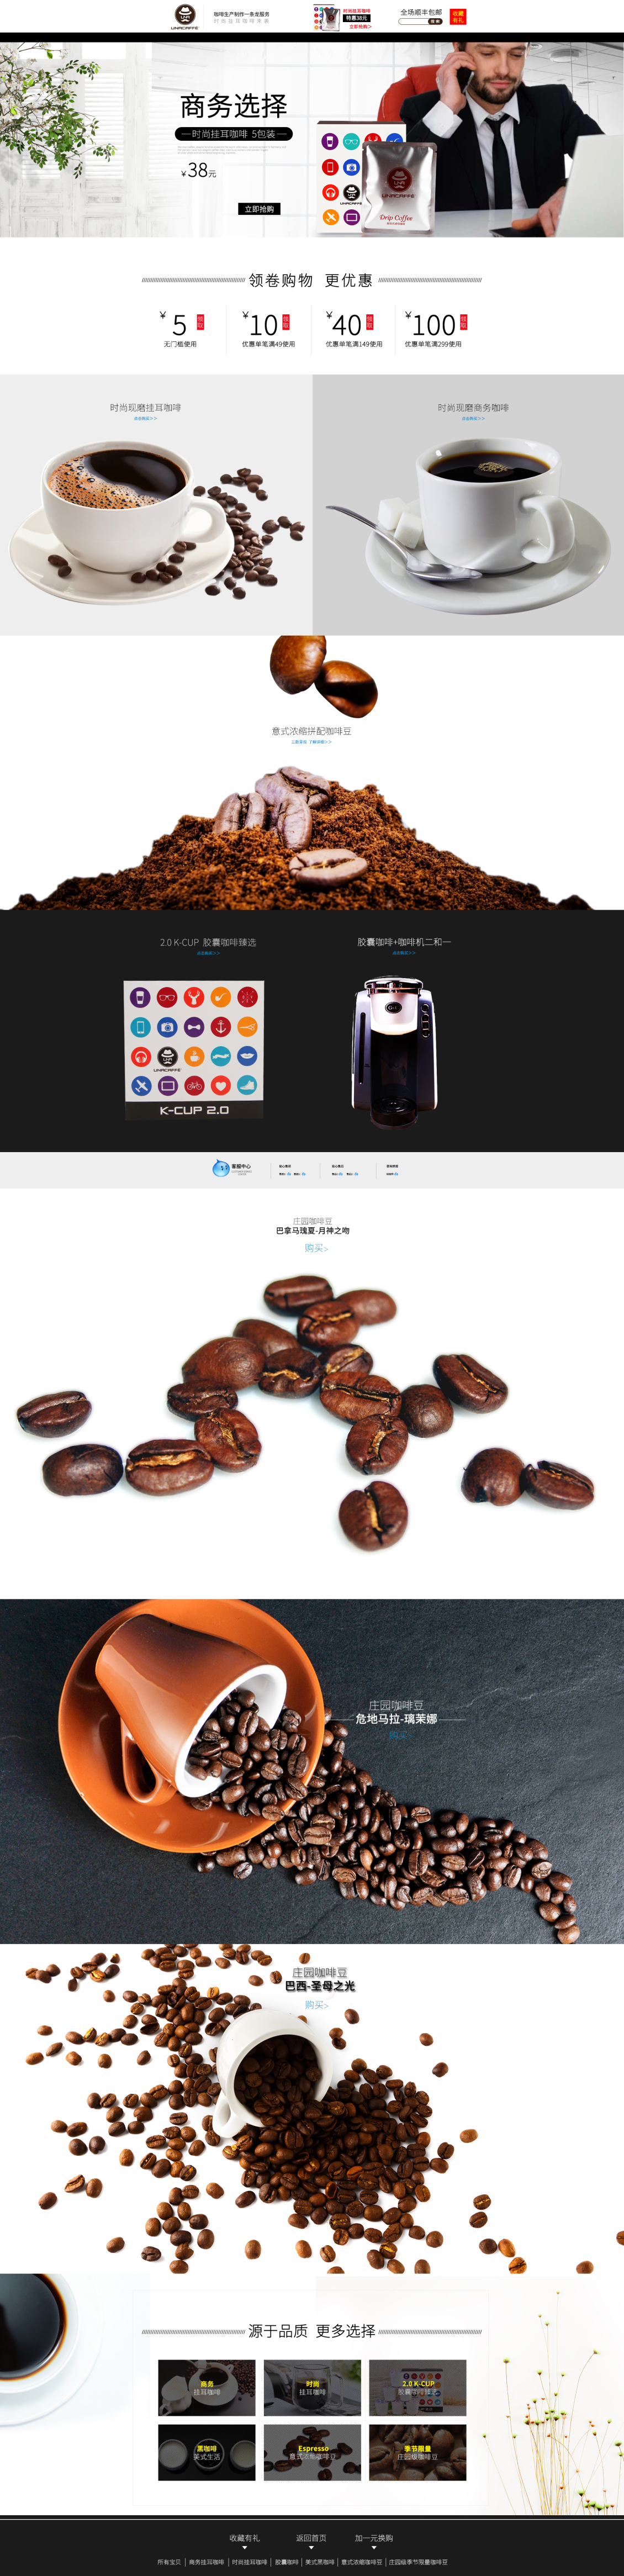 淘宝美工y57083咖啡豆首页设计大牌风格品牌策划爆款详情页产品客户提供作品